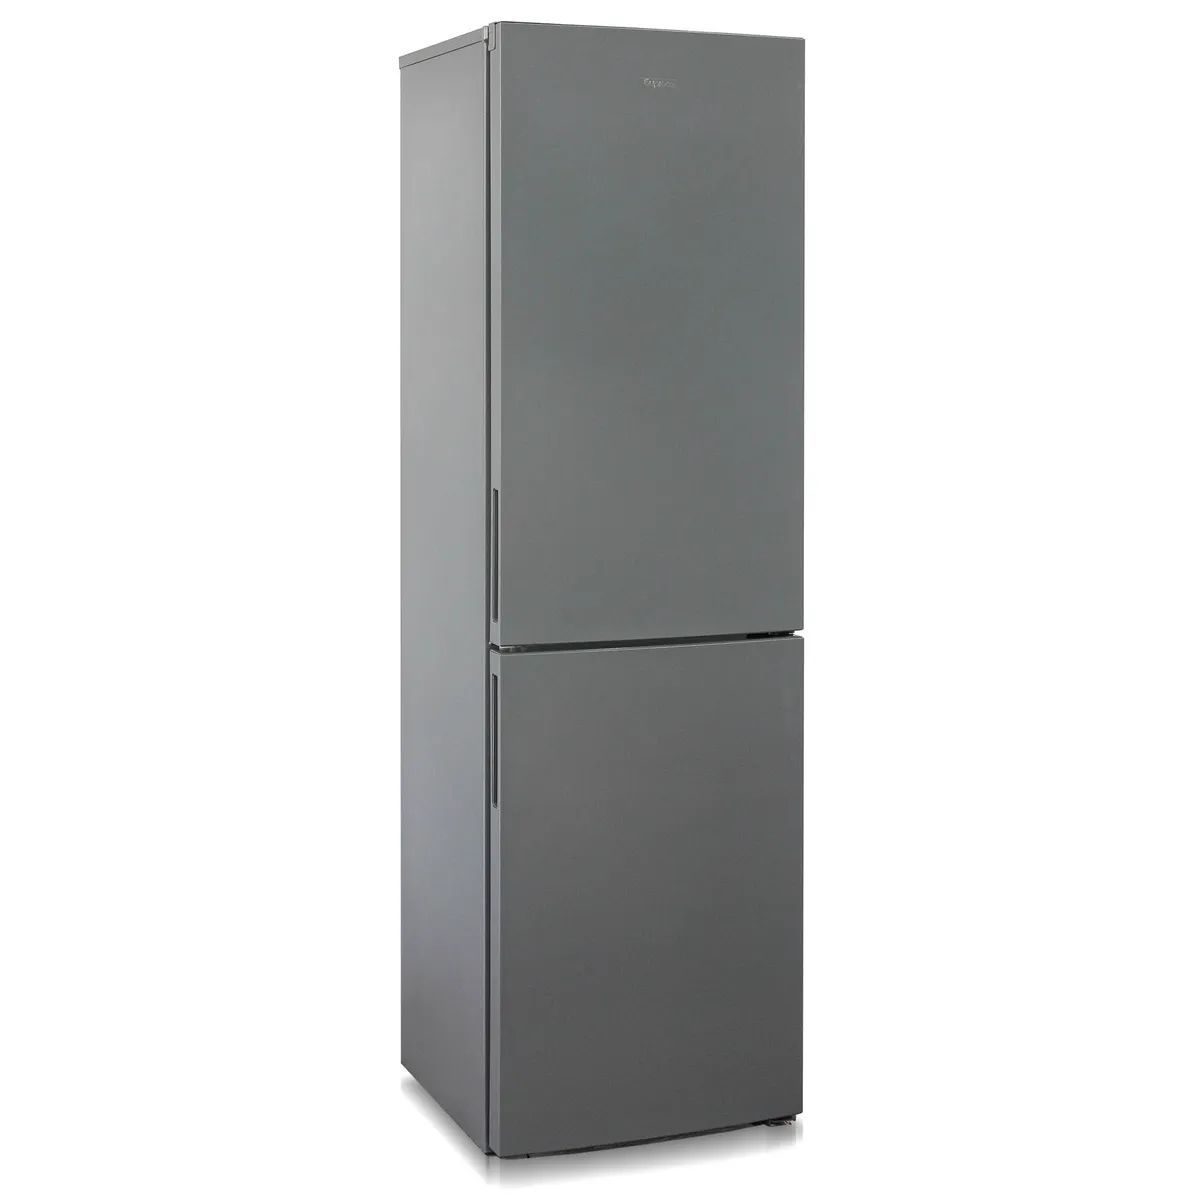 холодильник бирюса 6031, купить в Красноярске холодильник бирюса 6031,  купить в Красноярске дешево холодильник бирюса 6031, купить в Красноярске минимальной цене холодильник бирюса 6031